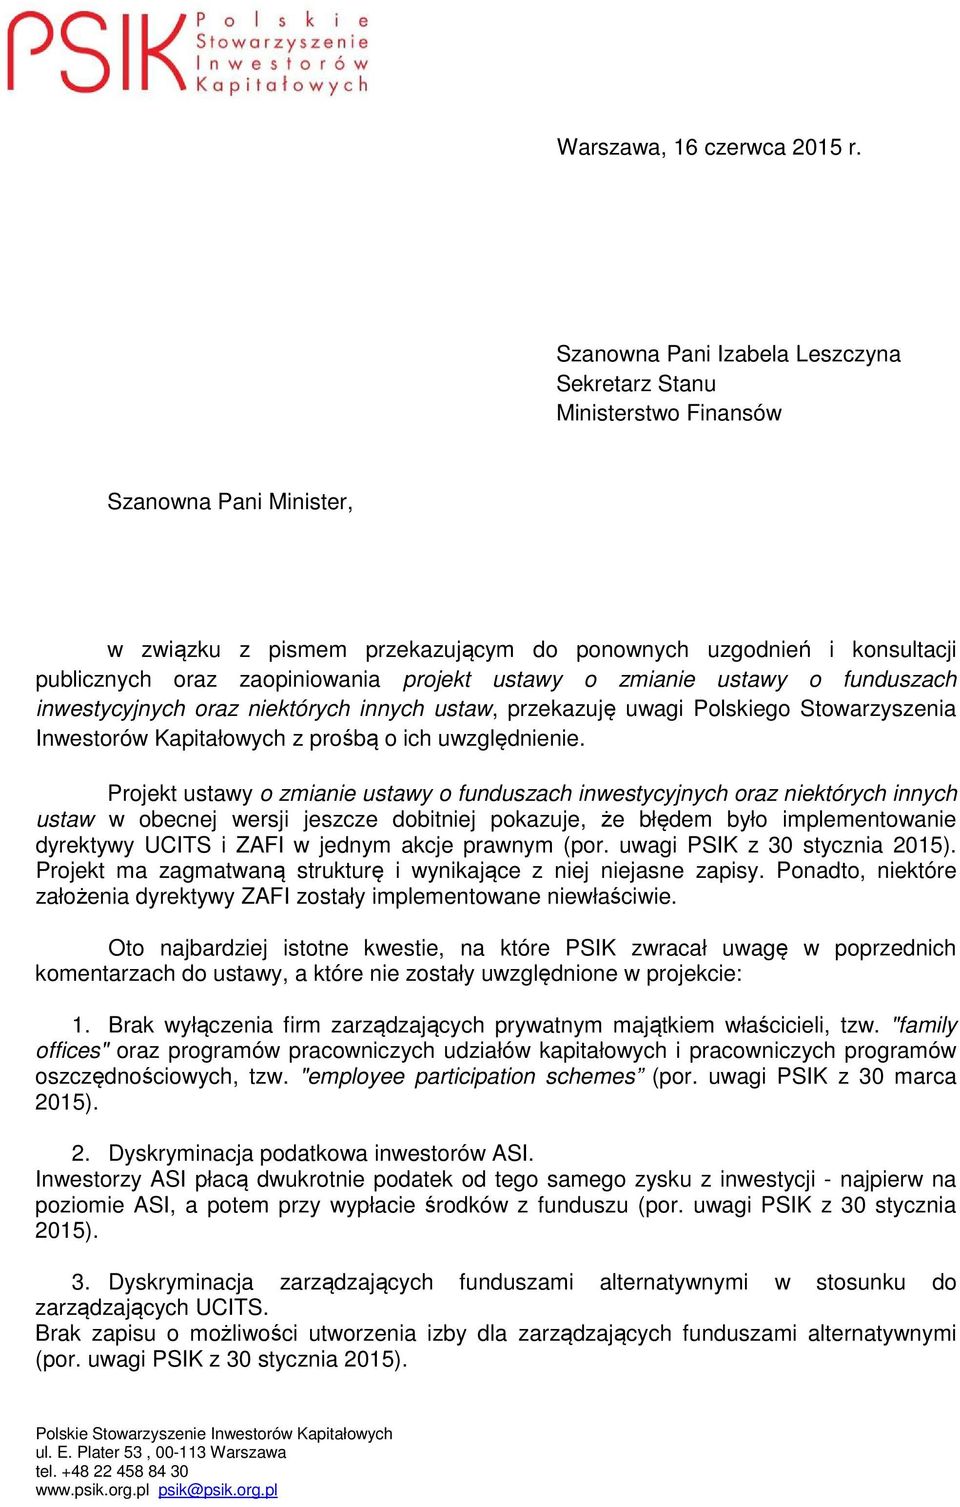 projekt ustawy o zmianie ustawy o funduszach inwestycyjnych oraz niektórych innych ustaw, przekazuję uwagi Polskiego Stowarzyszenia Inwestorów Kapitałowych z prośbą o ich uwzględnienie.